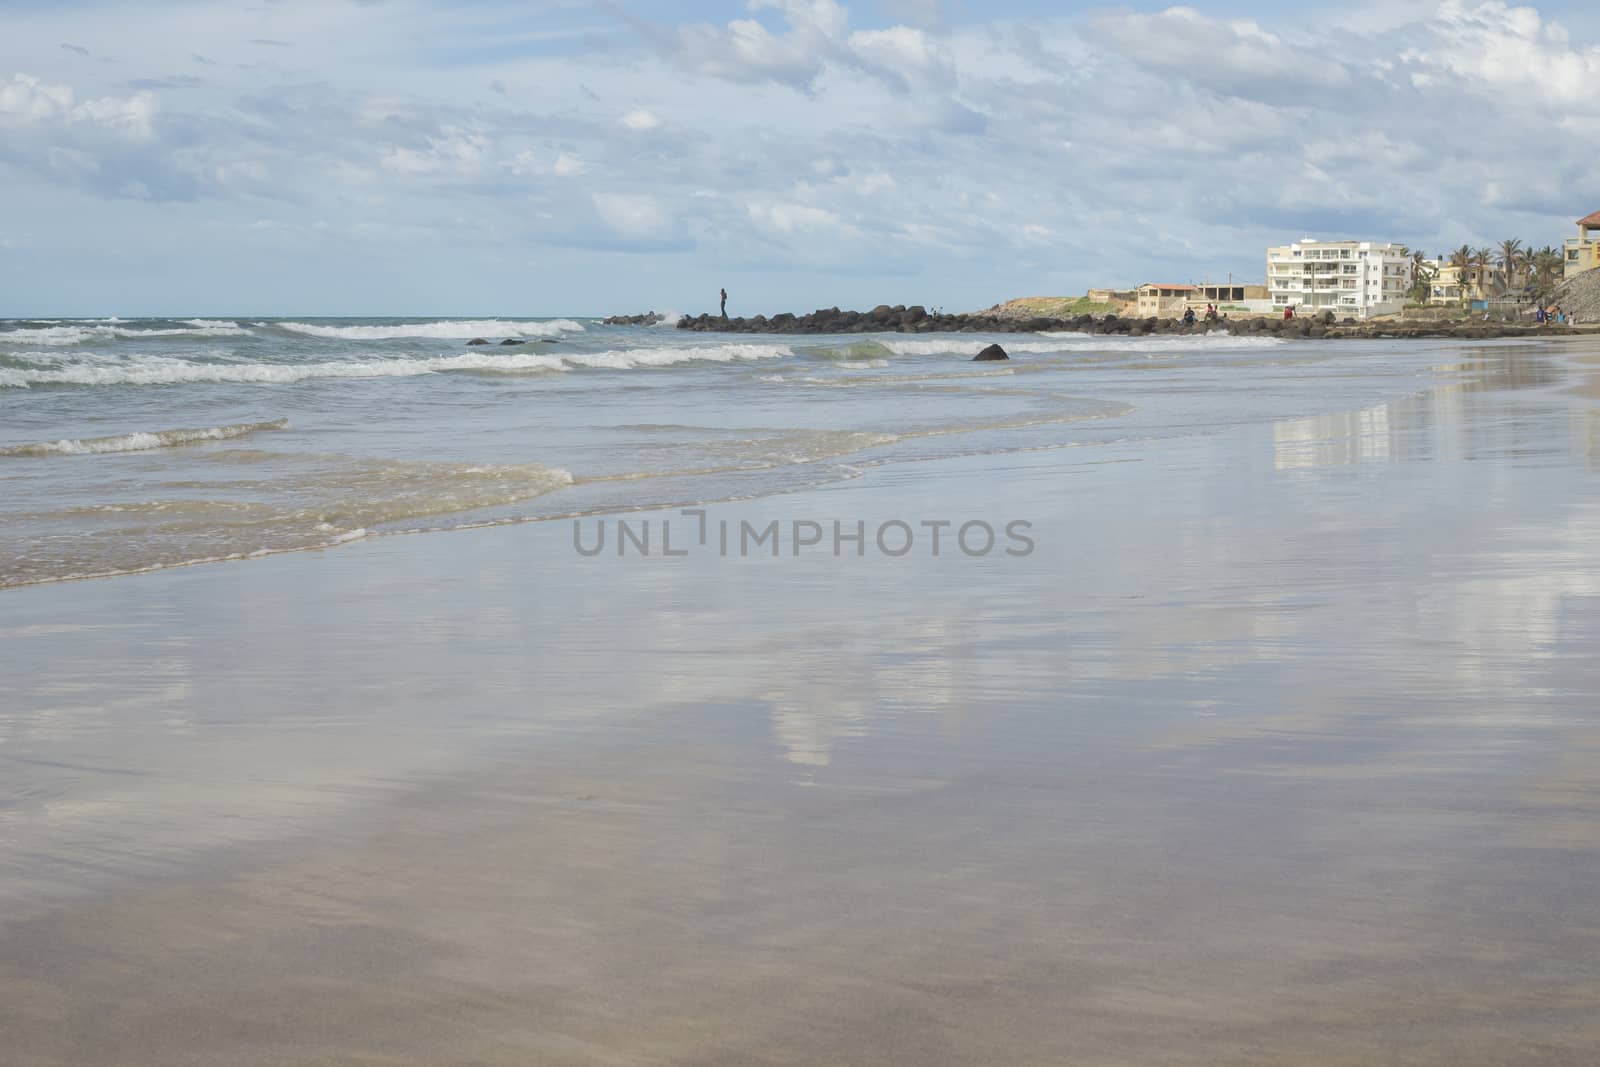 A beautiful beach along the shores of the Atlantic ocean in Dakar, Senegal